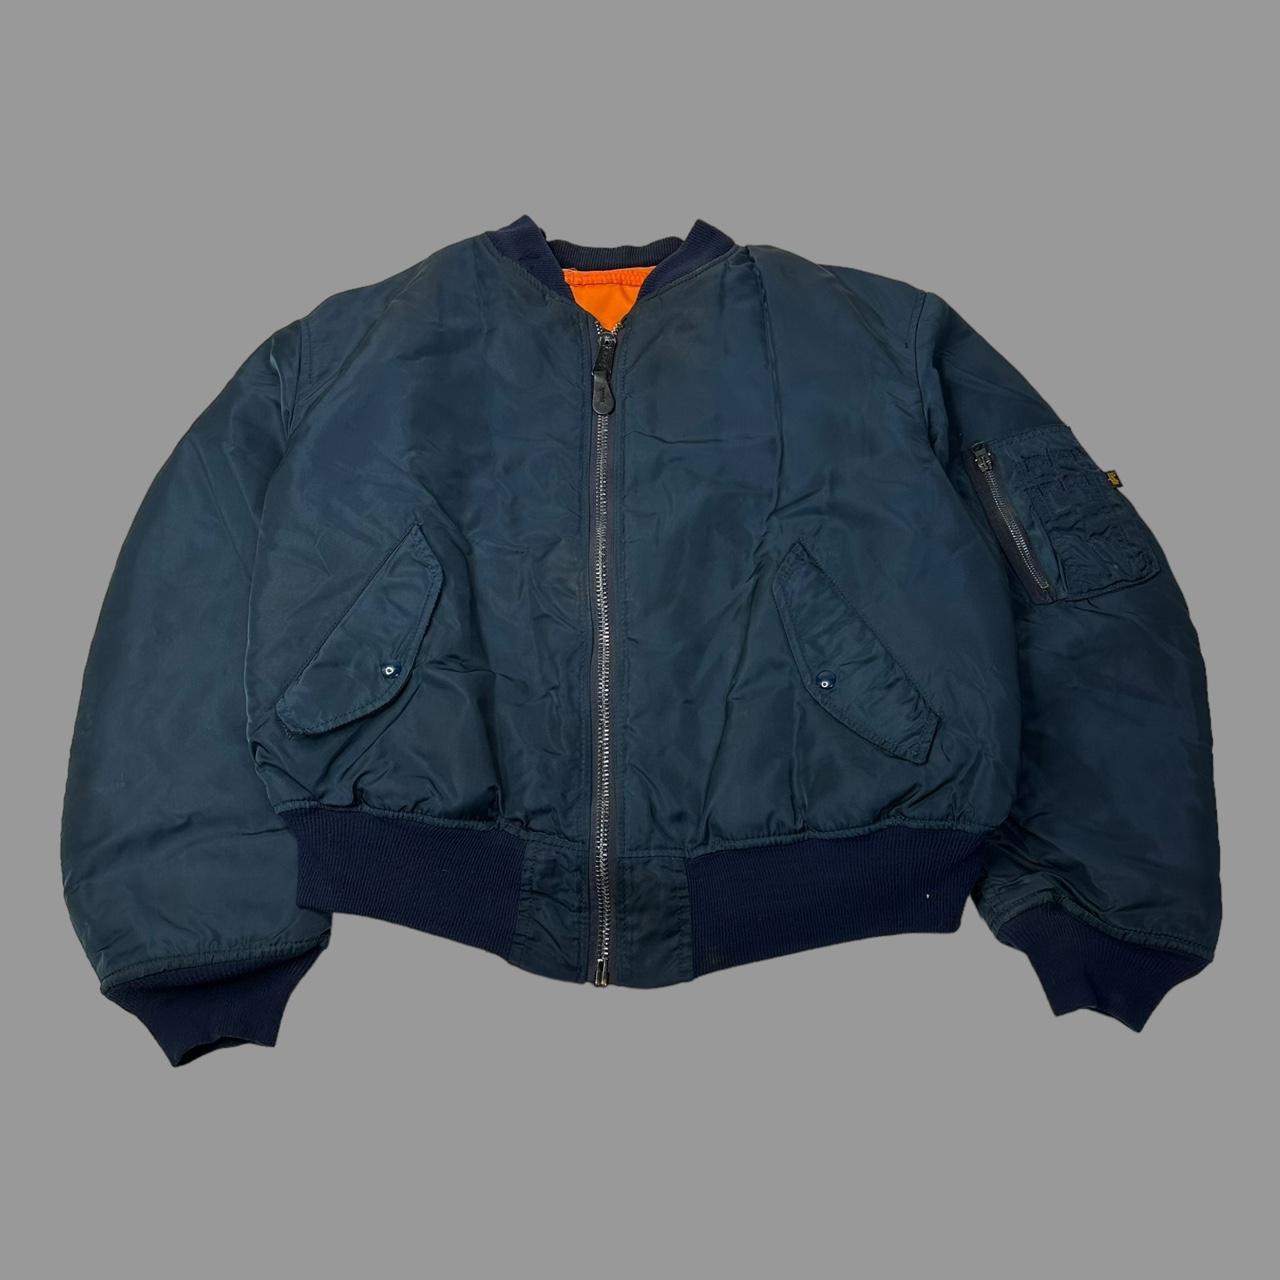 Vintage 1990s navy blue military bomber jacket alpha... - Depop